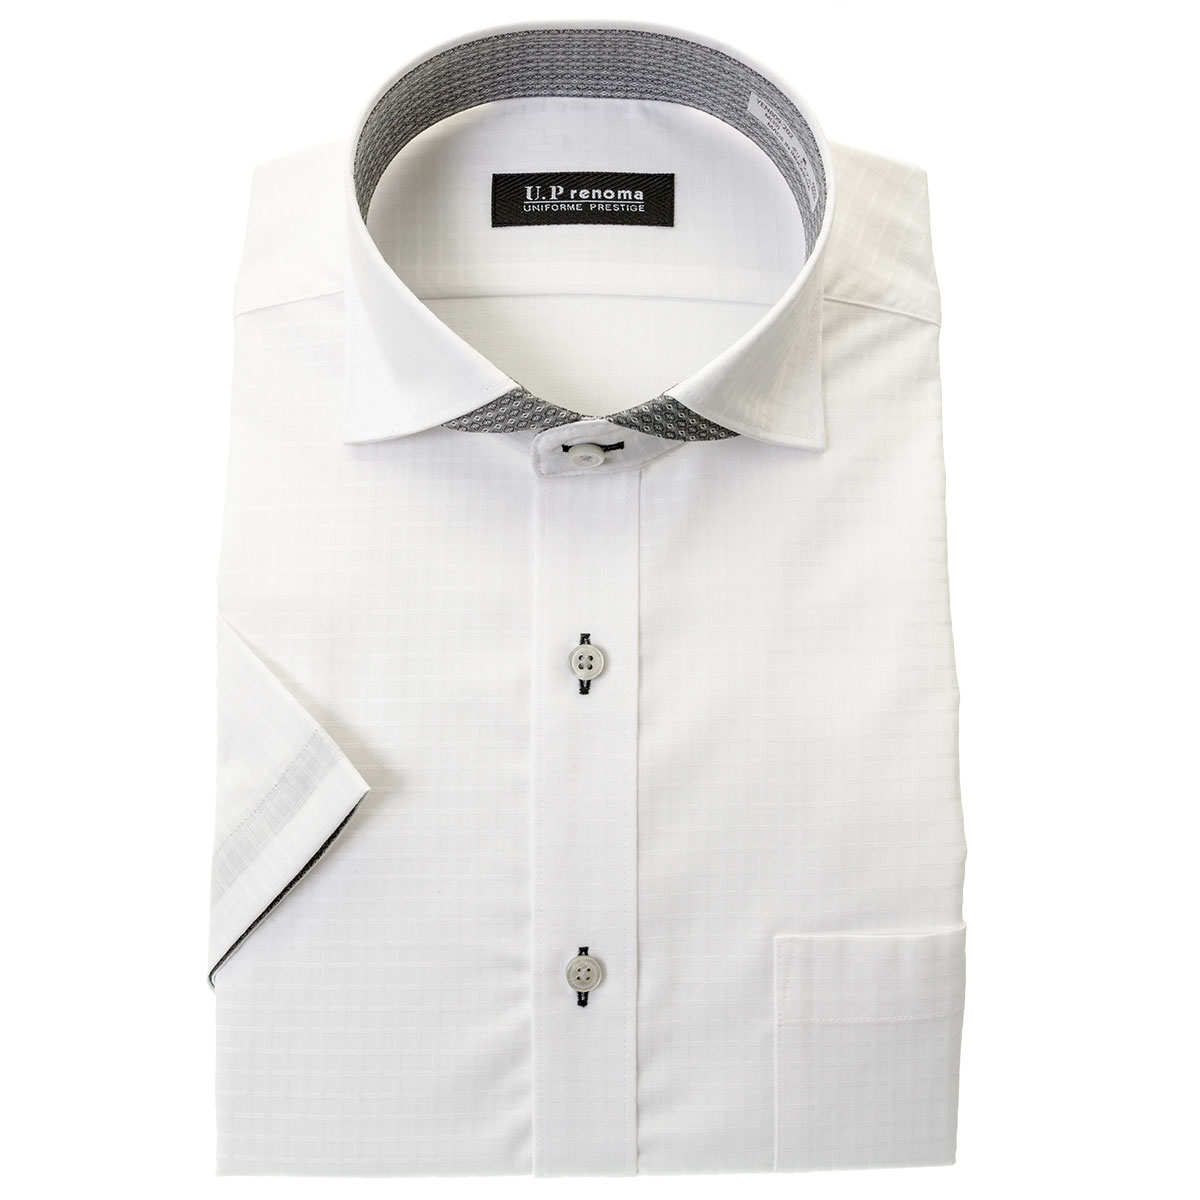 U.P renoma 半袖スリムフィット カッタウェイ ホワイト ワイシャツ